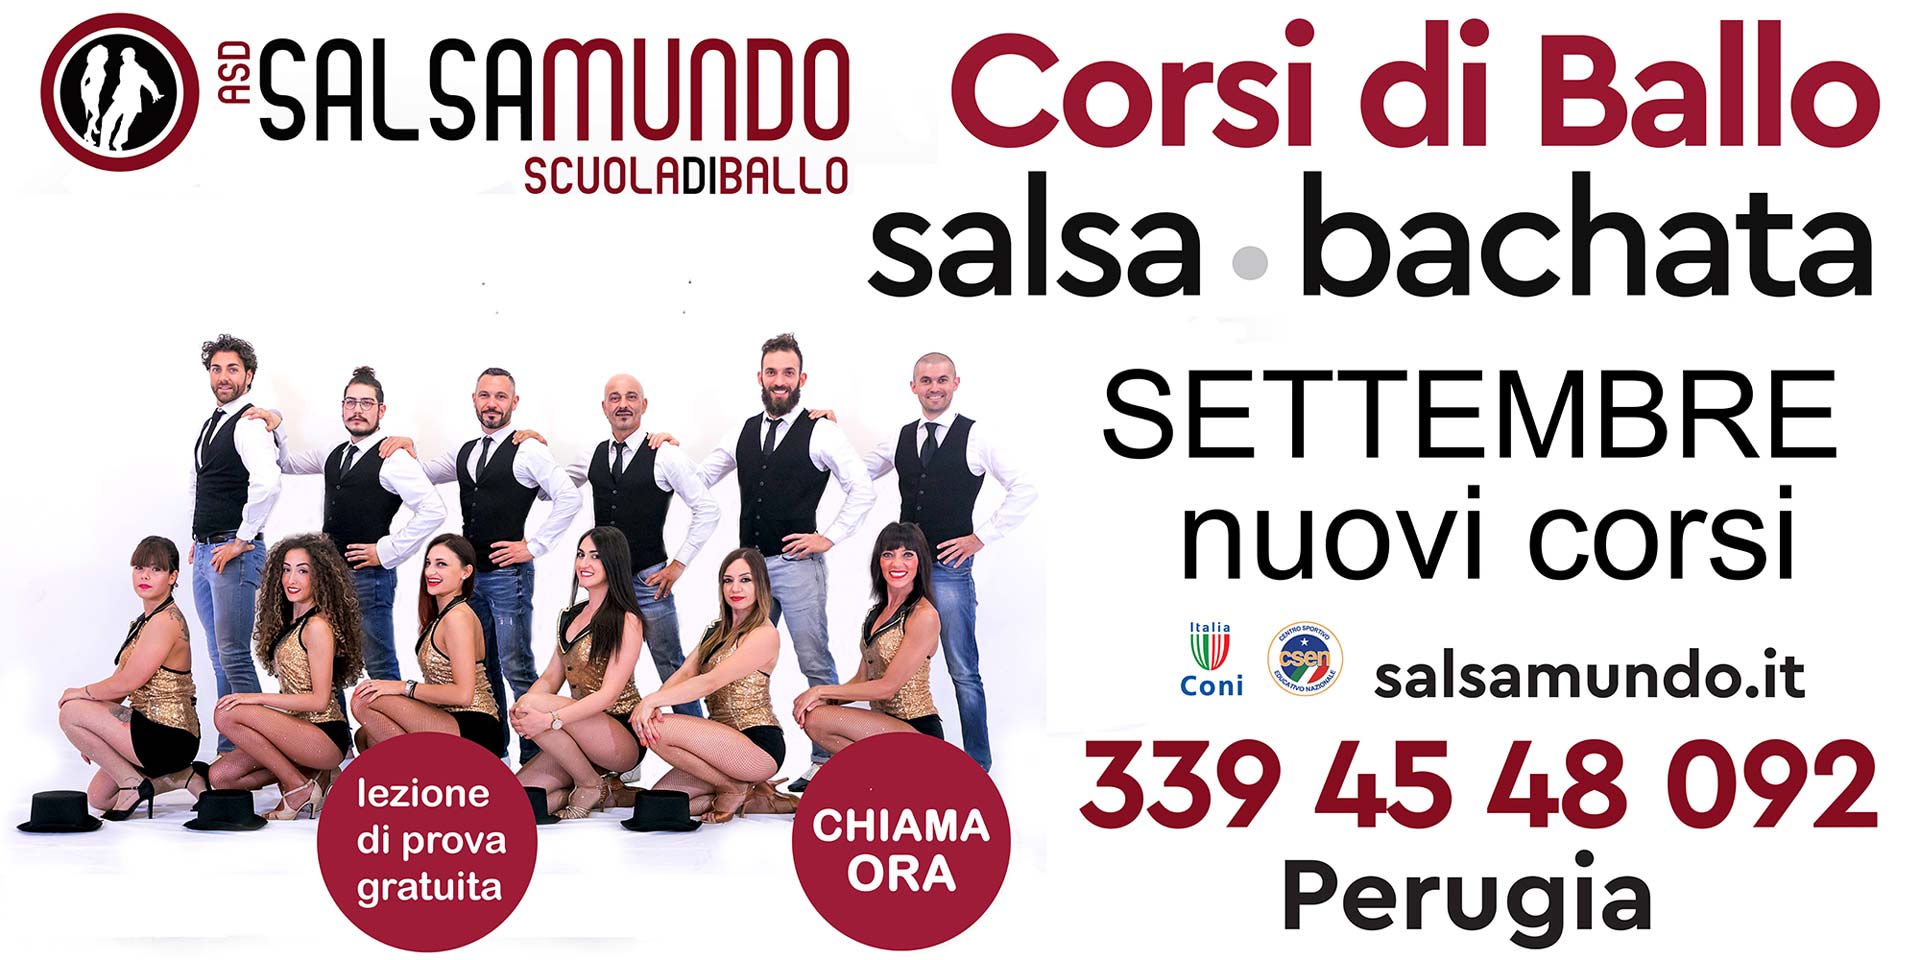 A.S.D. Salsamundo - Scuola di ballo - Nuovi corsi Salsa e Bachata da settembre 2022 - Perugia